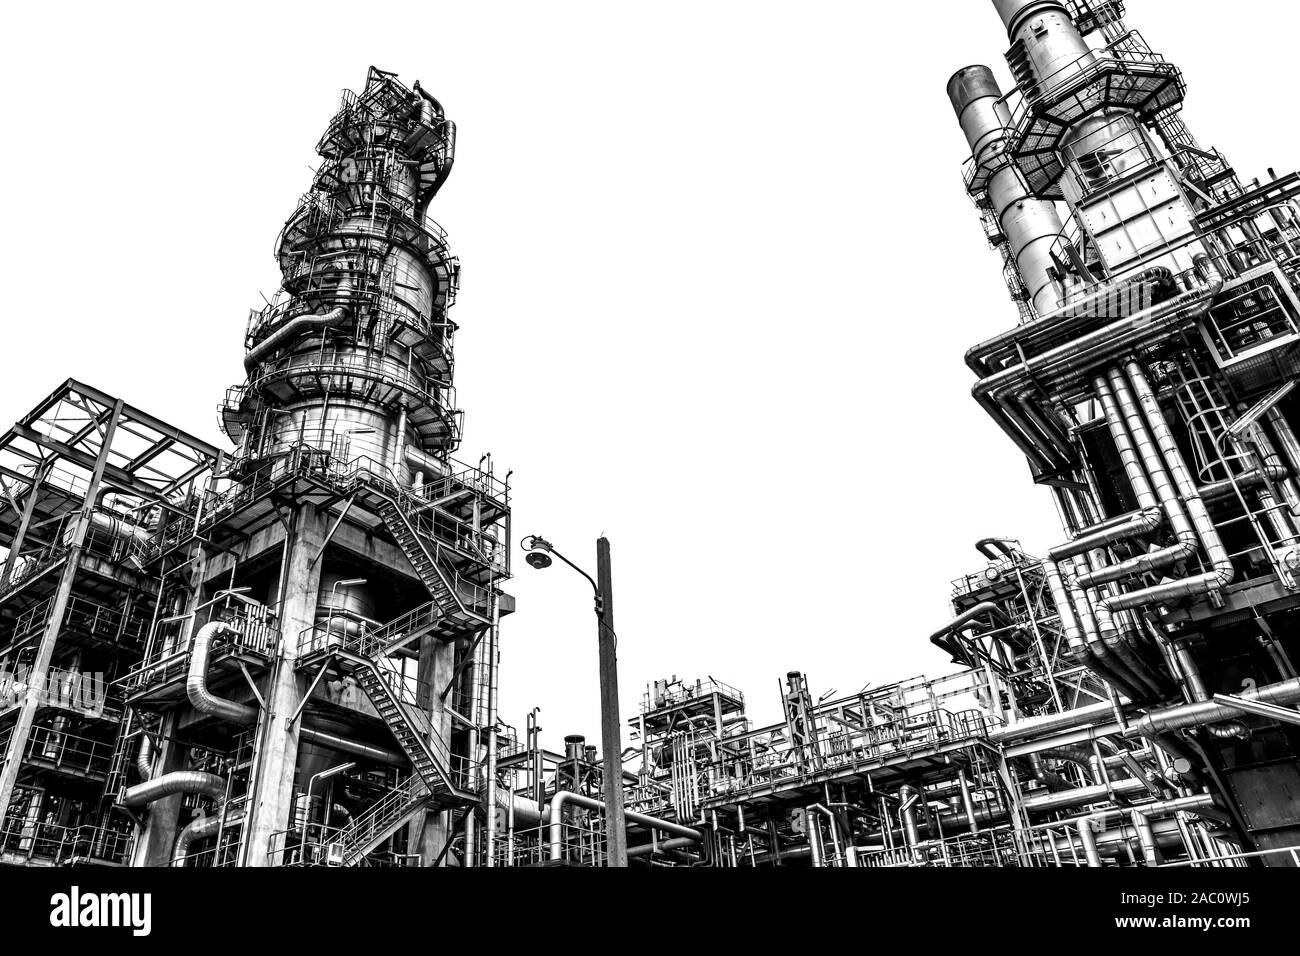 L'industrie du pétrole et du gaz de raffinerie,usine,usine pétrochimique domaine à fond blanc. Banque D'Images